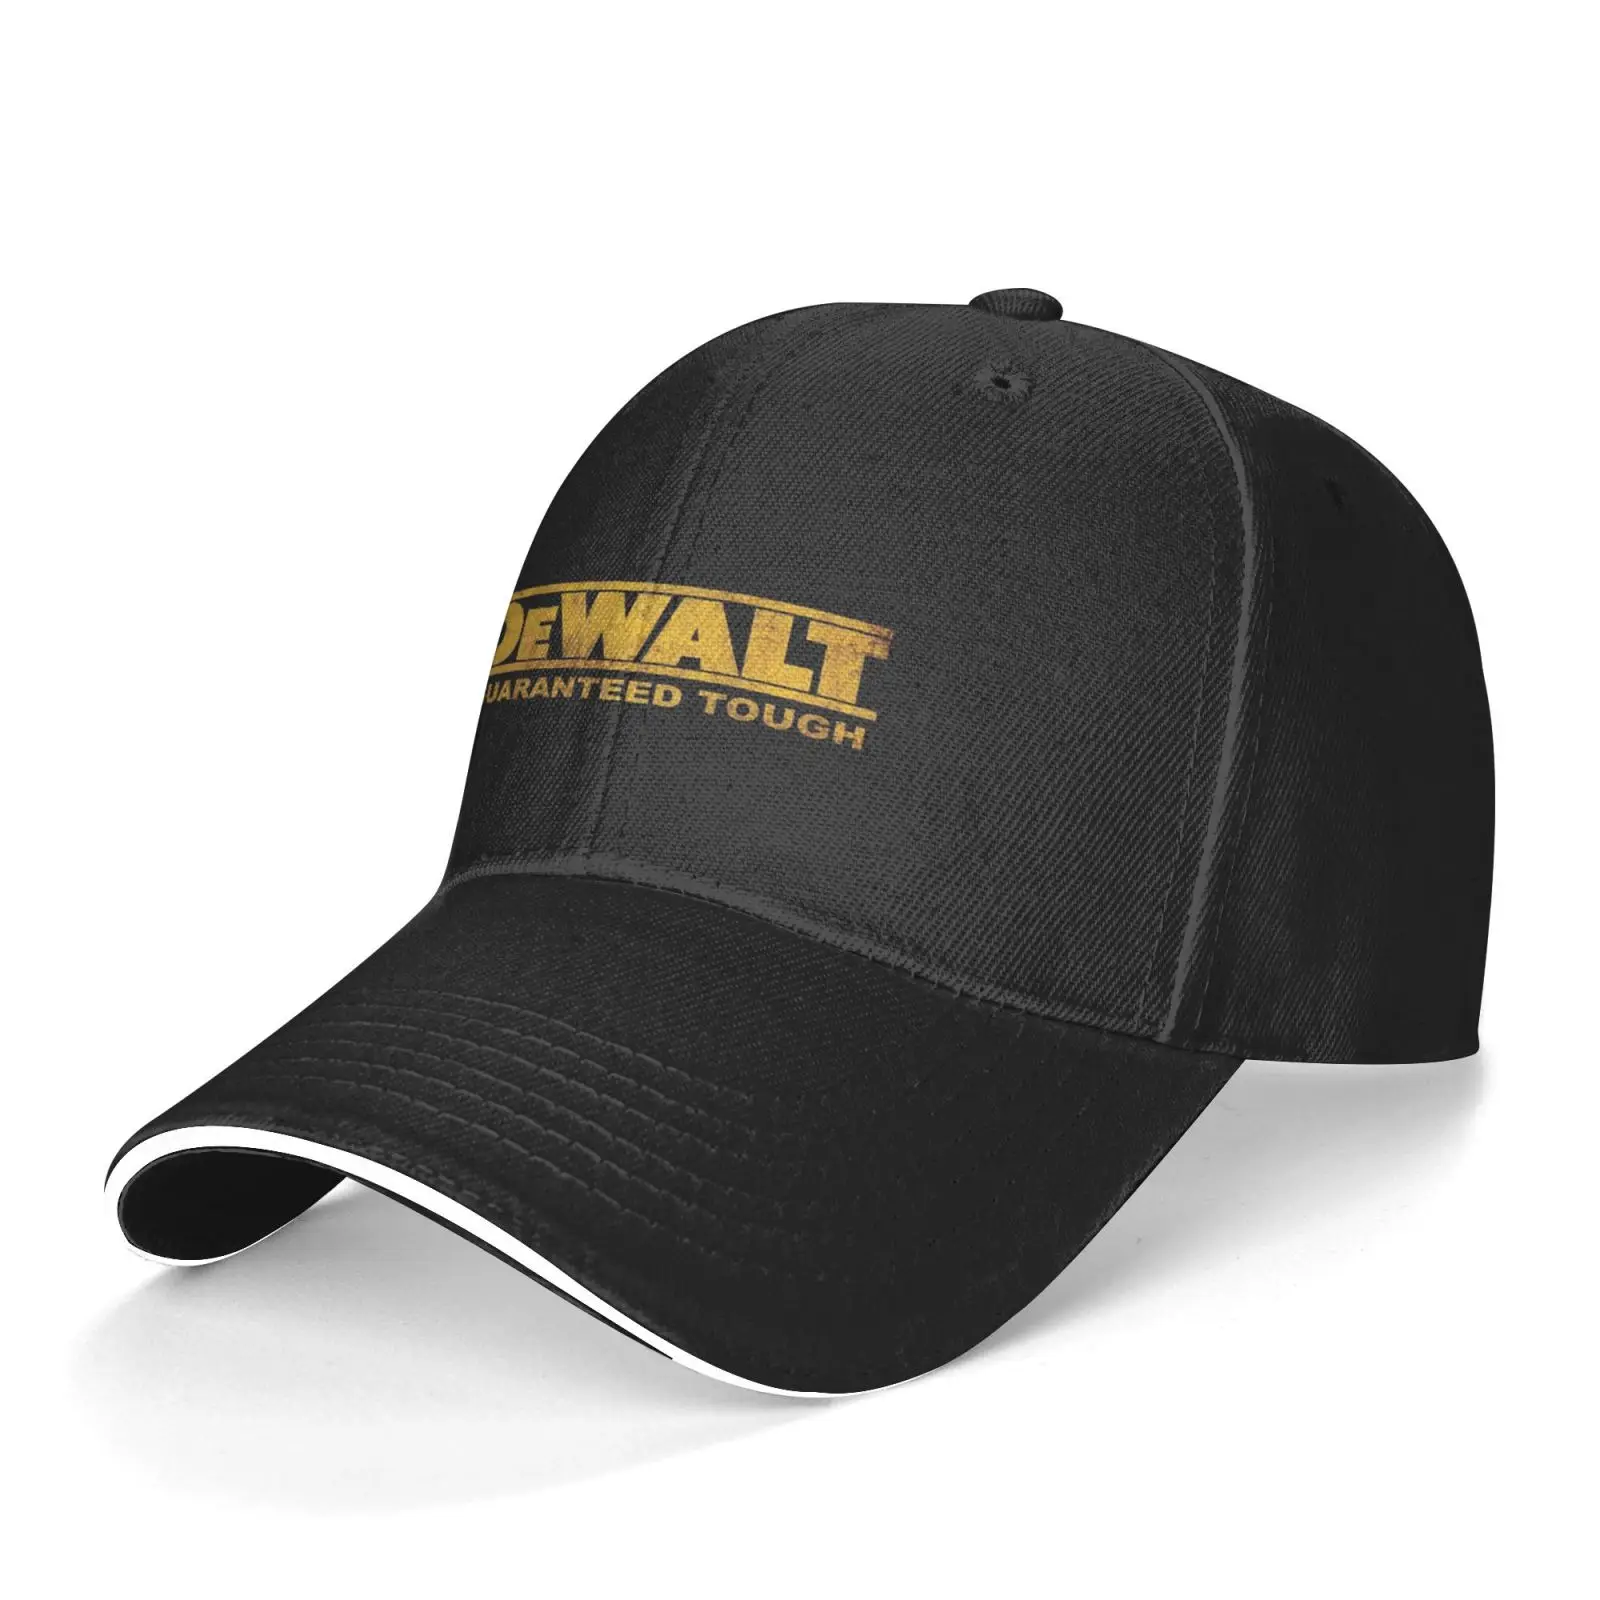 Кепка DeWalt 619, Мужская кепка, женская мужская кепка Cowgirl s, Женская Мужская кепка, мужские береты, бейсболка для мужчин, мужской берет